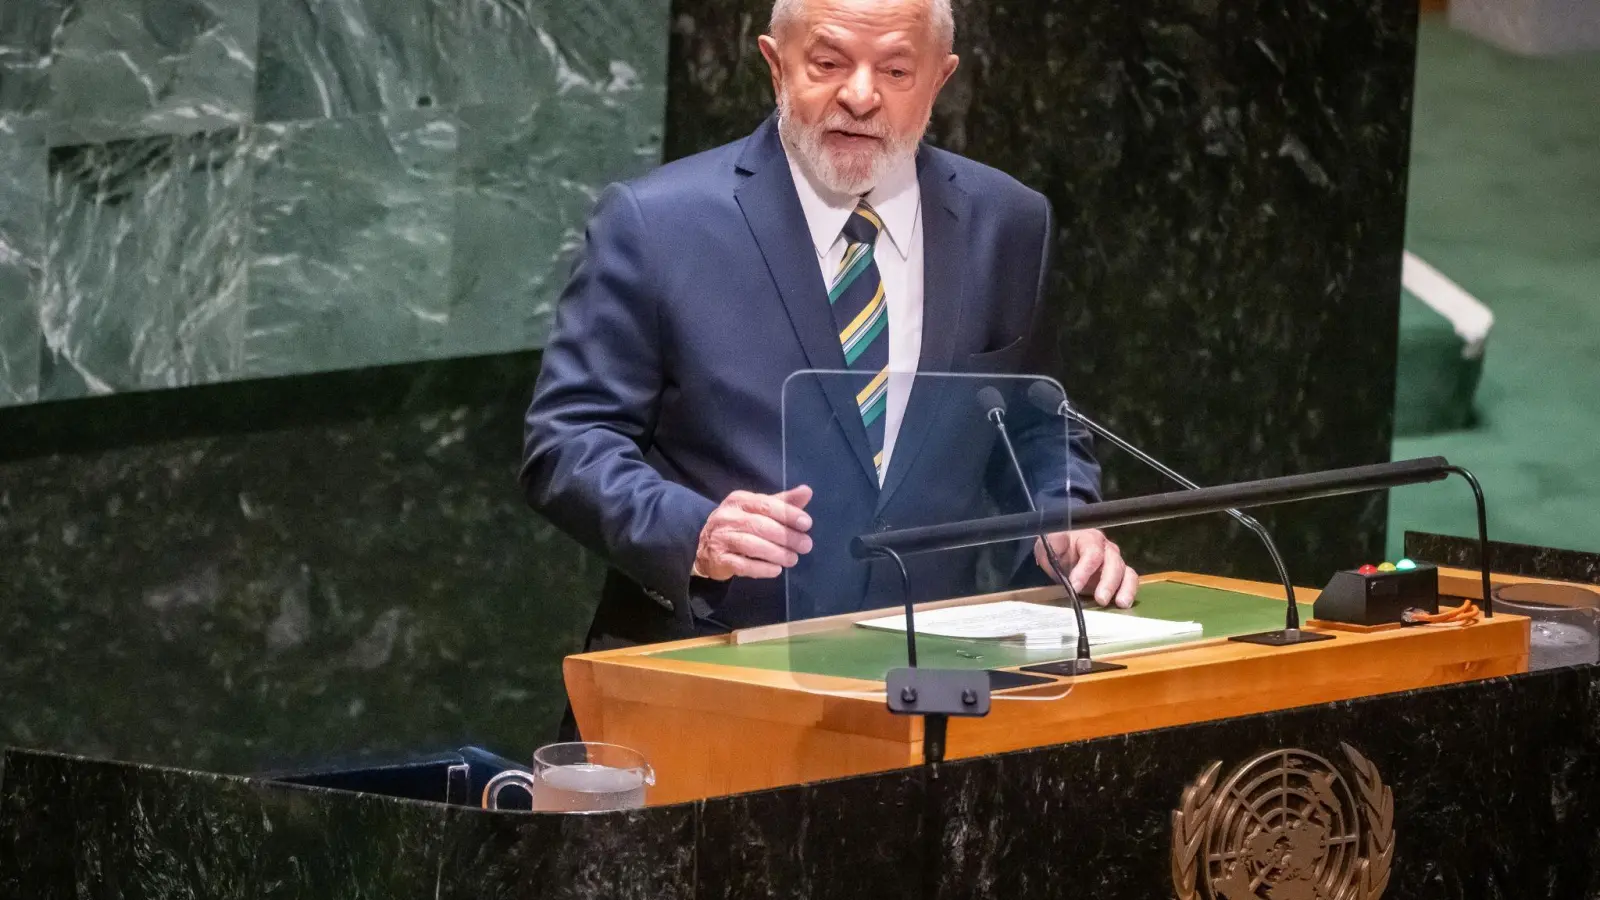 Ähnlich wie andere linke Staatschefs in Lateinamerika kritisiert Brasiliens Präsident Lula den russischen Angriffskrieg gegen die Ukraine zwar, hält sich mit deutlichen Worten gegenüber Moskau aber zurück. (Foto: Michael Kappeler/dpa)